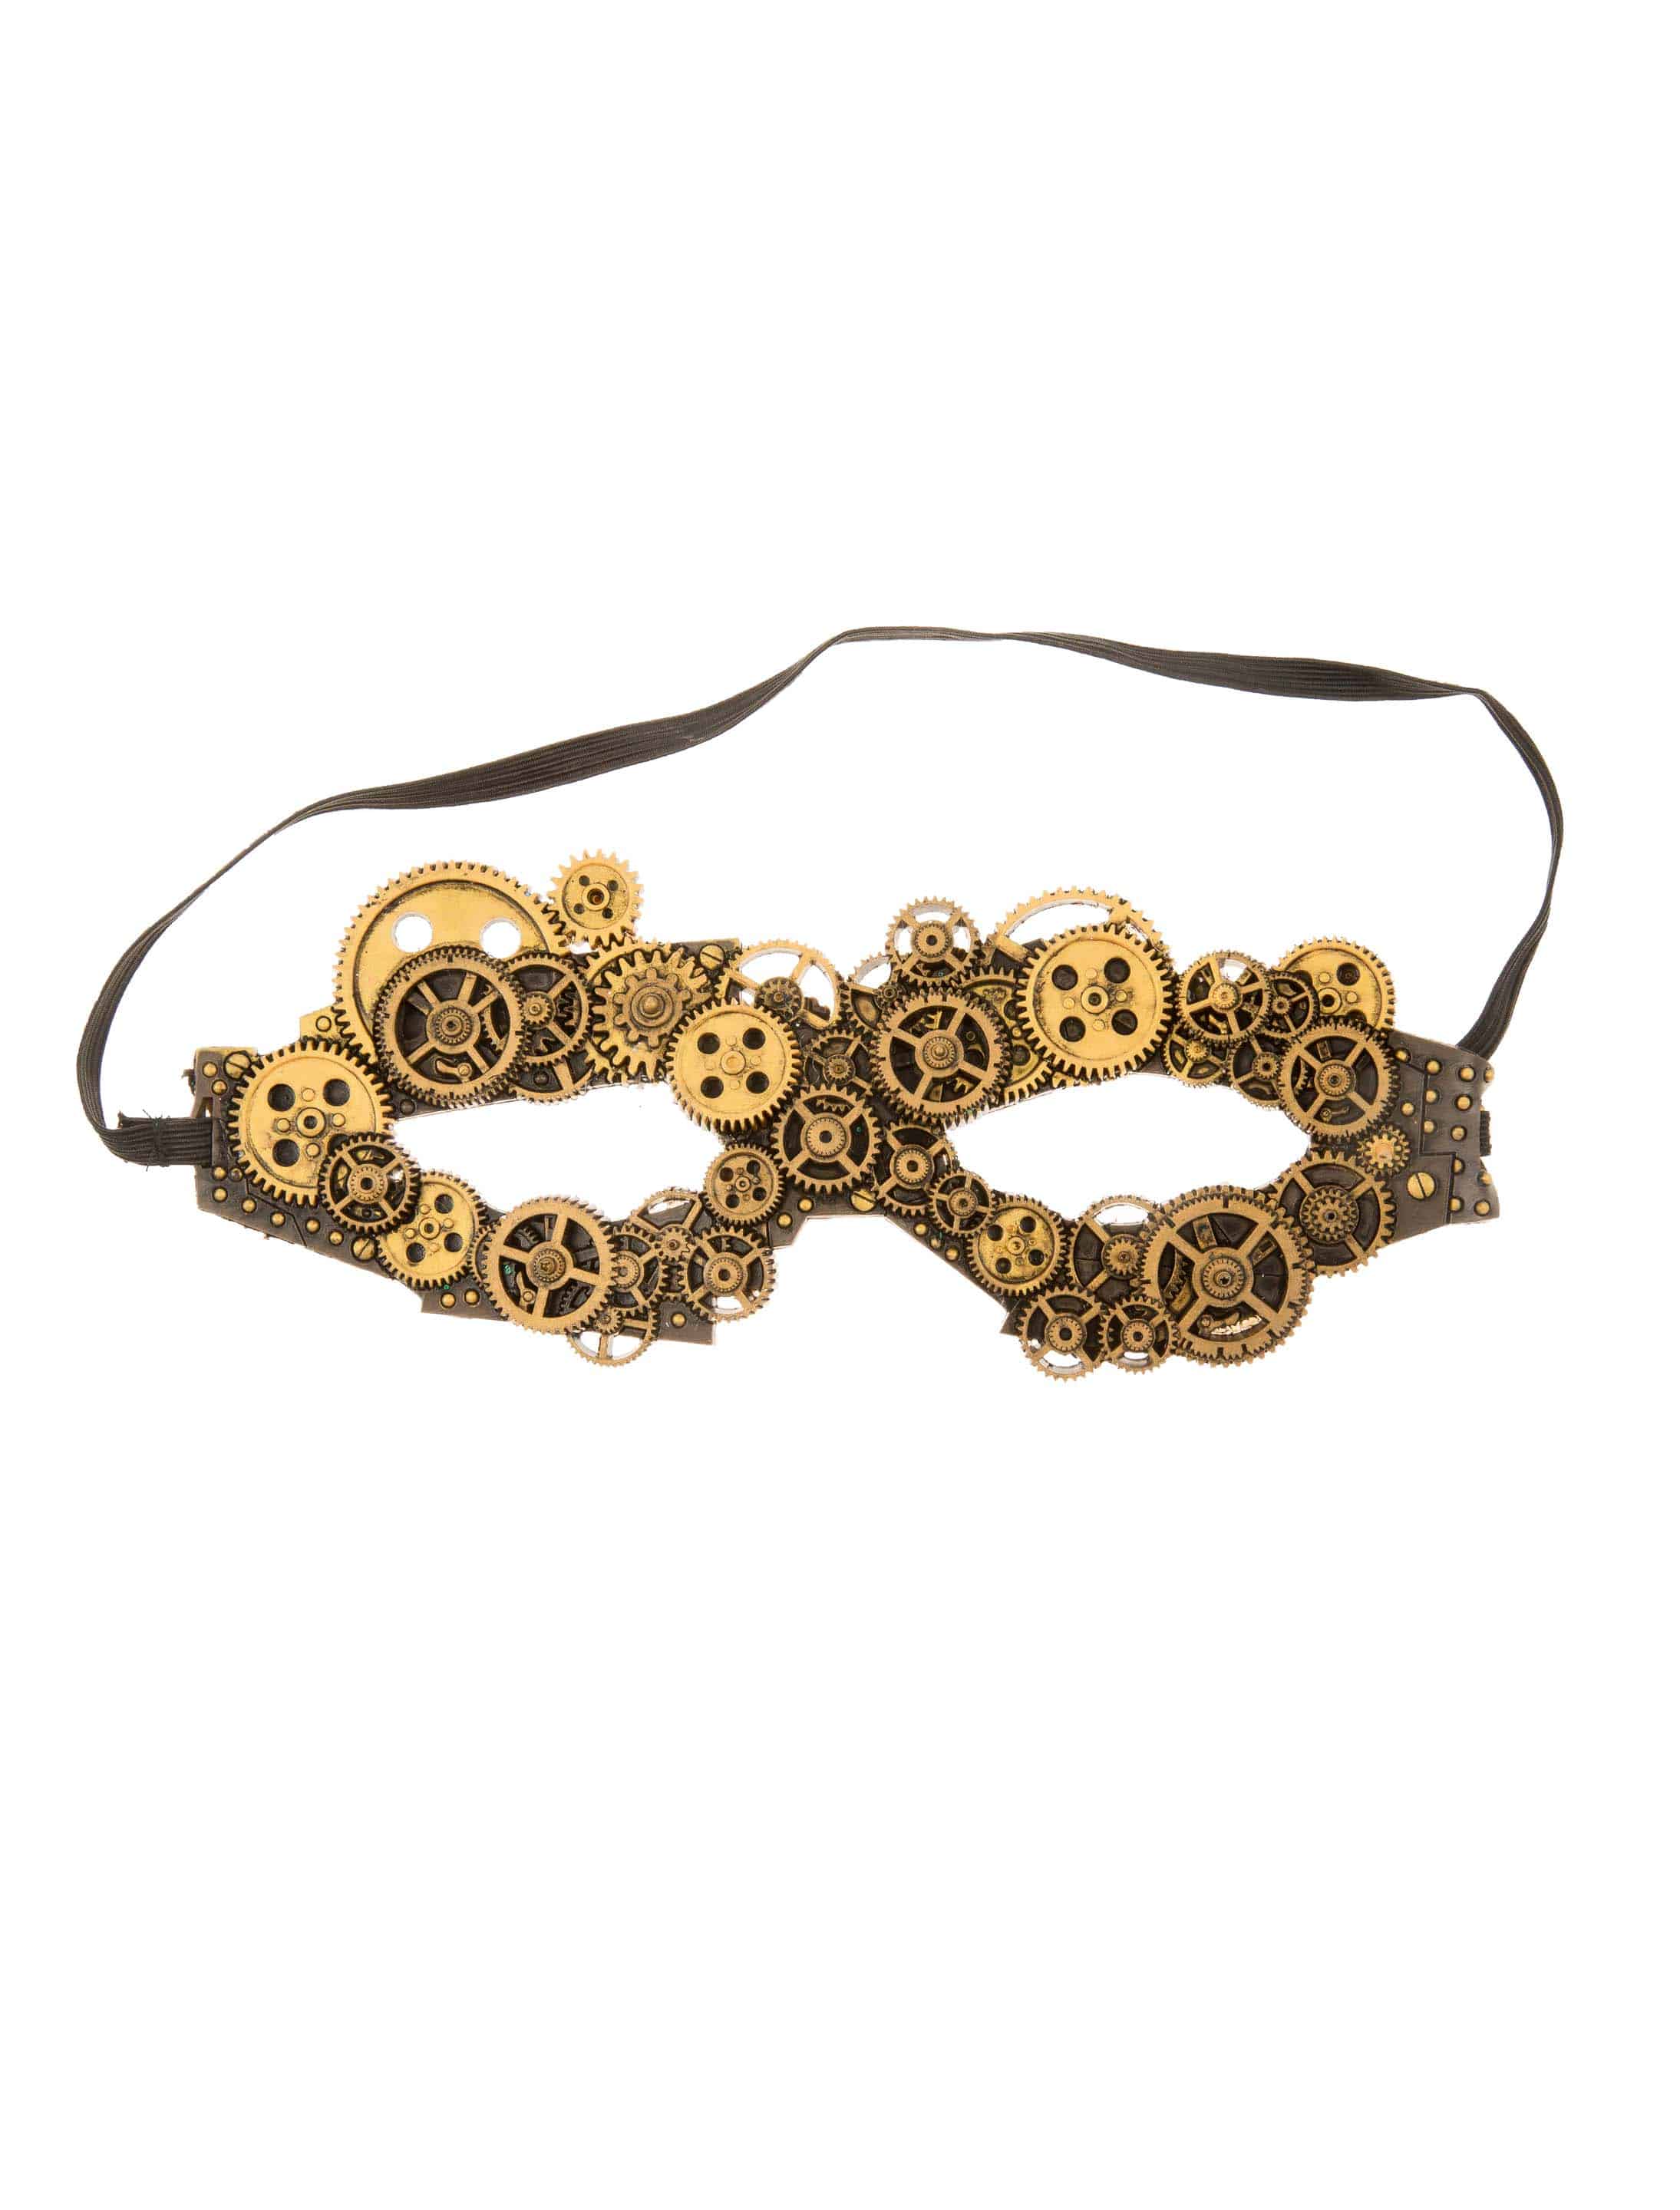 Maske Steampunk mit Zahnrädern gold